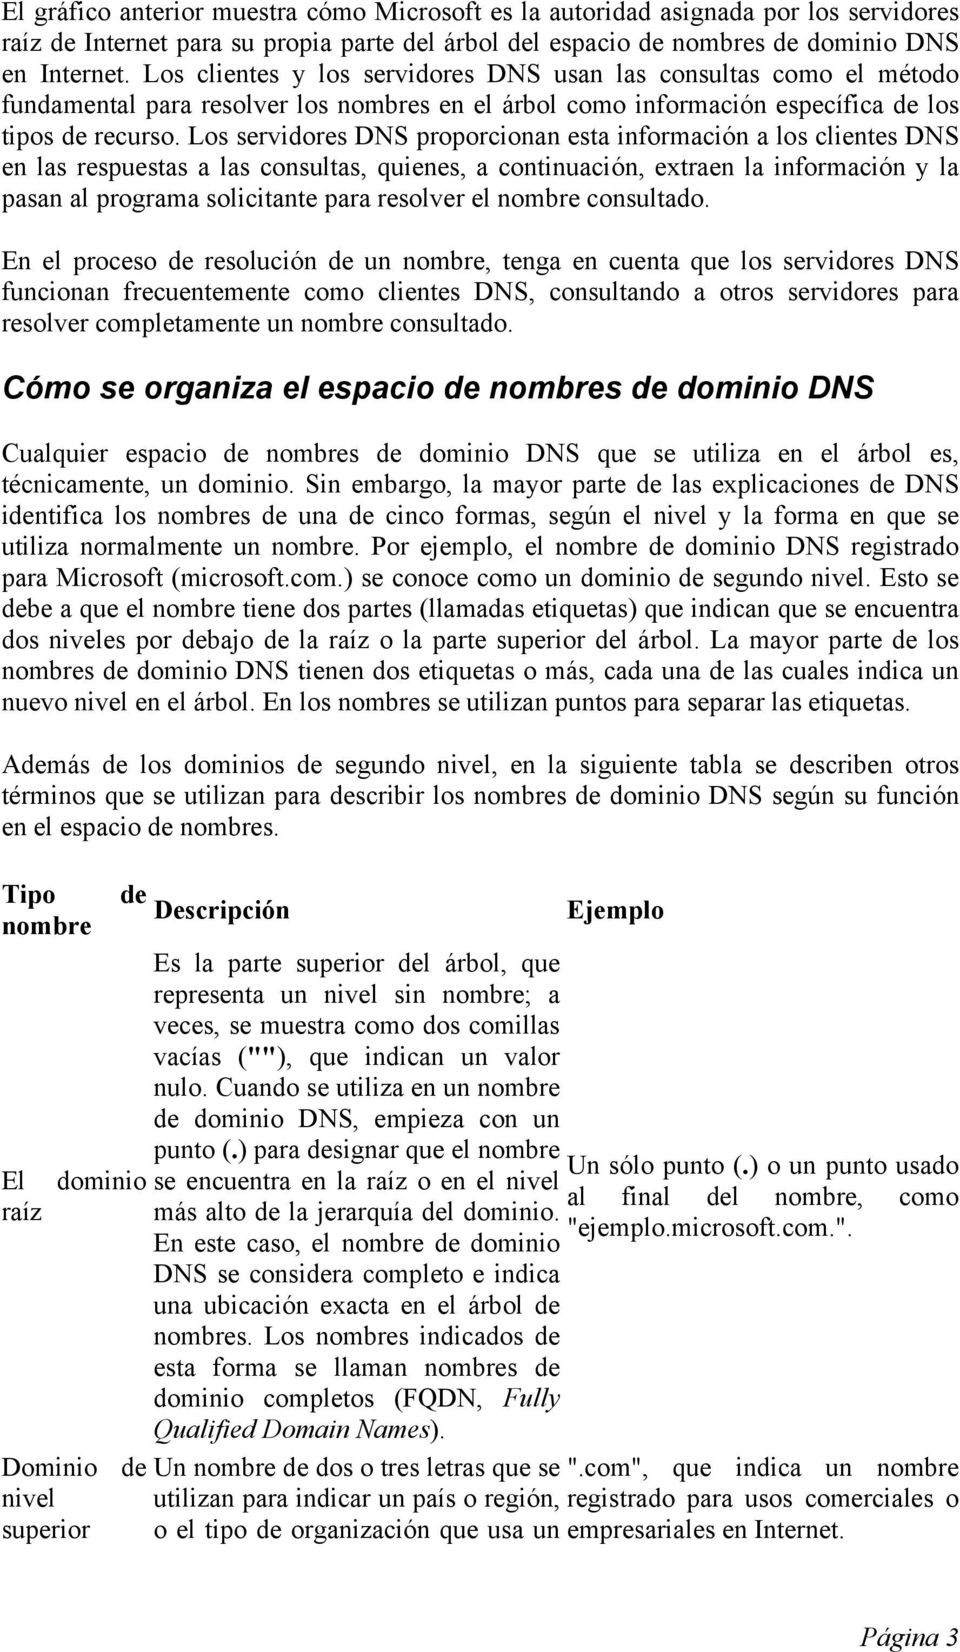 Los servidores DNS proporcionan esta información a los clientes DNS en las respuestas a las consultas, quienes, a continuación, extraen la información y la pasan al programa solicitante para resolver